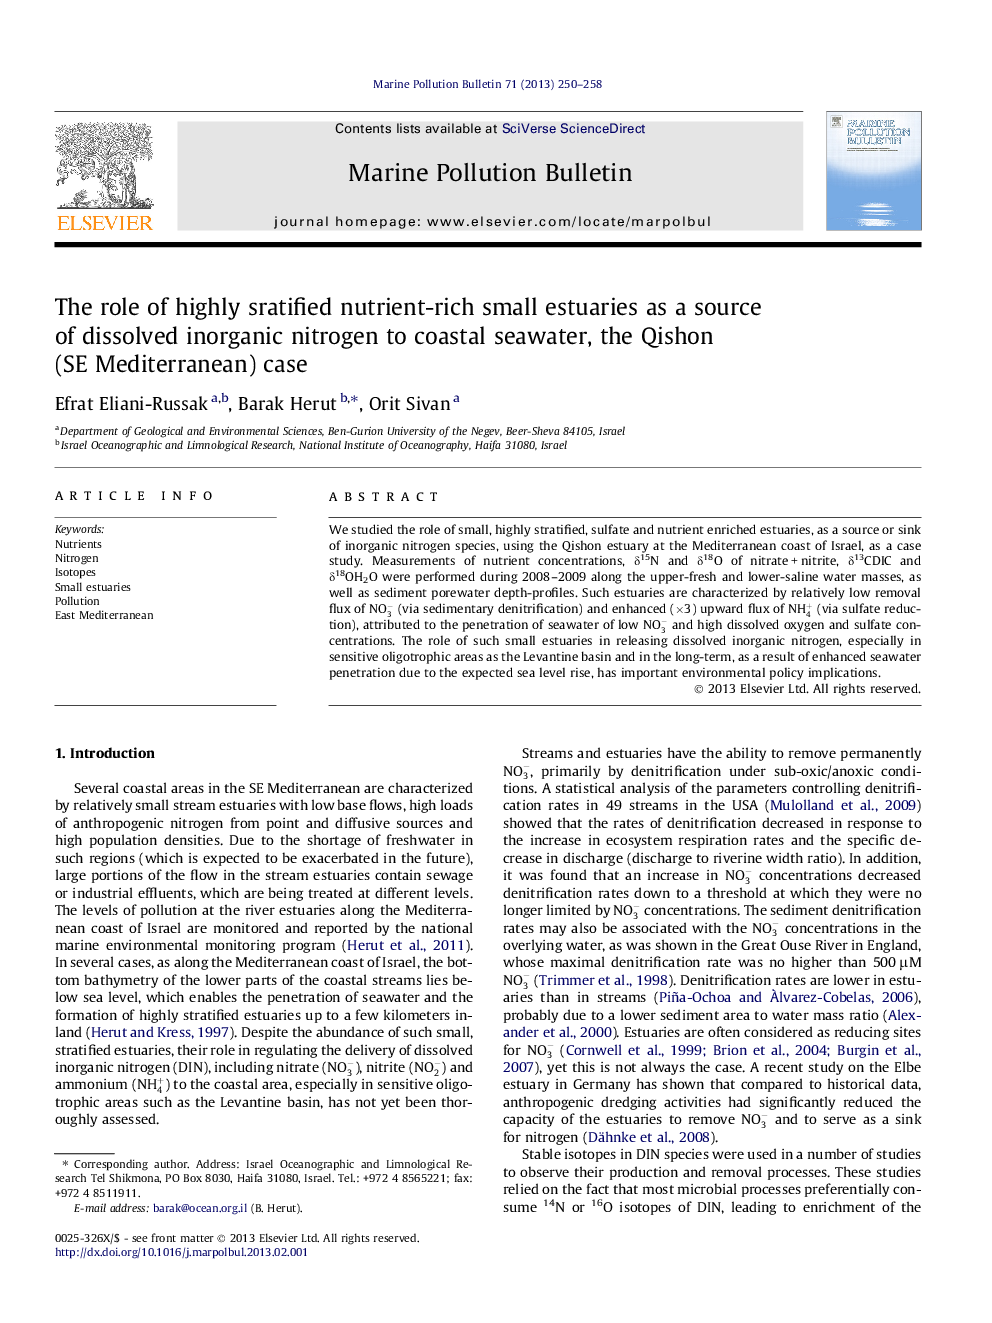 نقش گیاهان کوچک غنی از مواد مغذی بسیار باکیفیت به عنوان منبع نیتروژن معدنی حل شده به دریای ساحلی، مورد قیشون (دریای مدیترانه) 